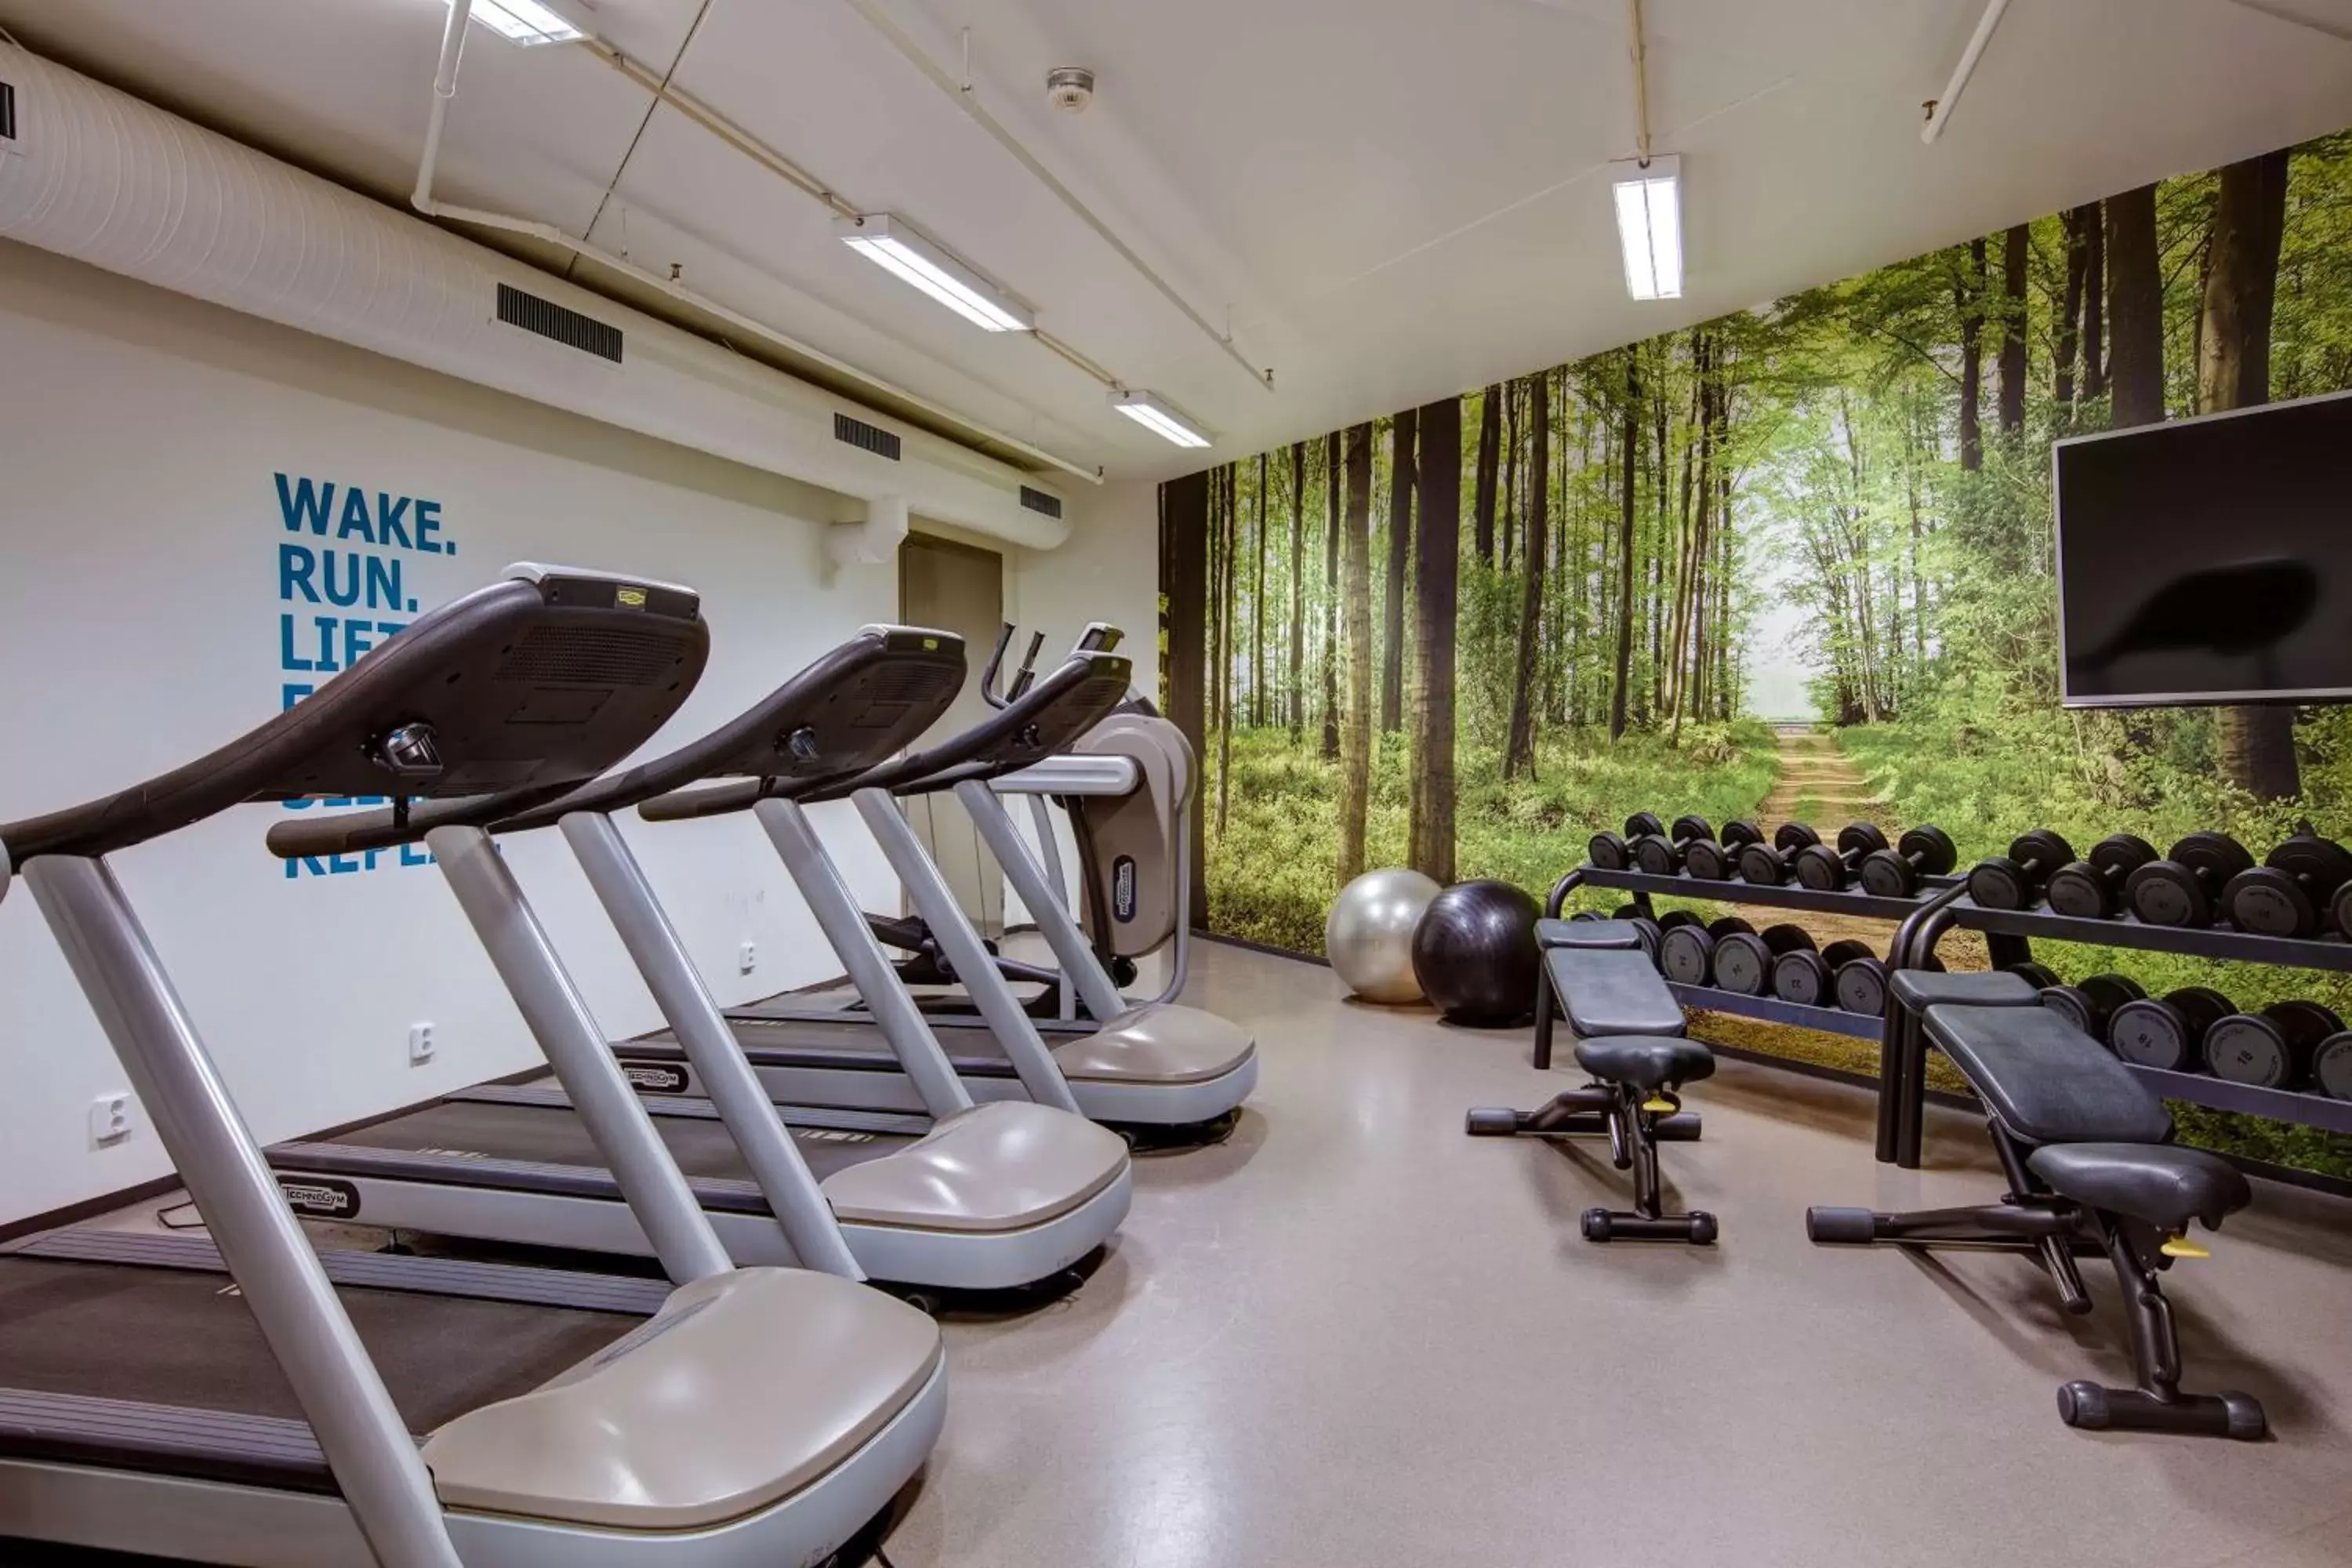 Fitness centre/facilities, Fitness Center/Facilities in Radisson Blu Hotel Oslo Alna